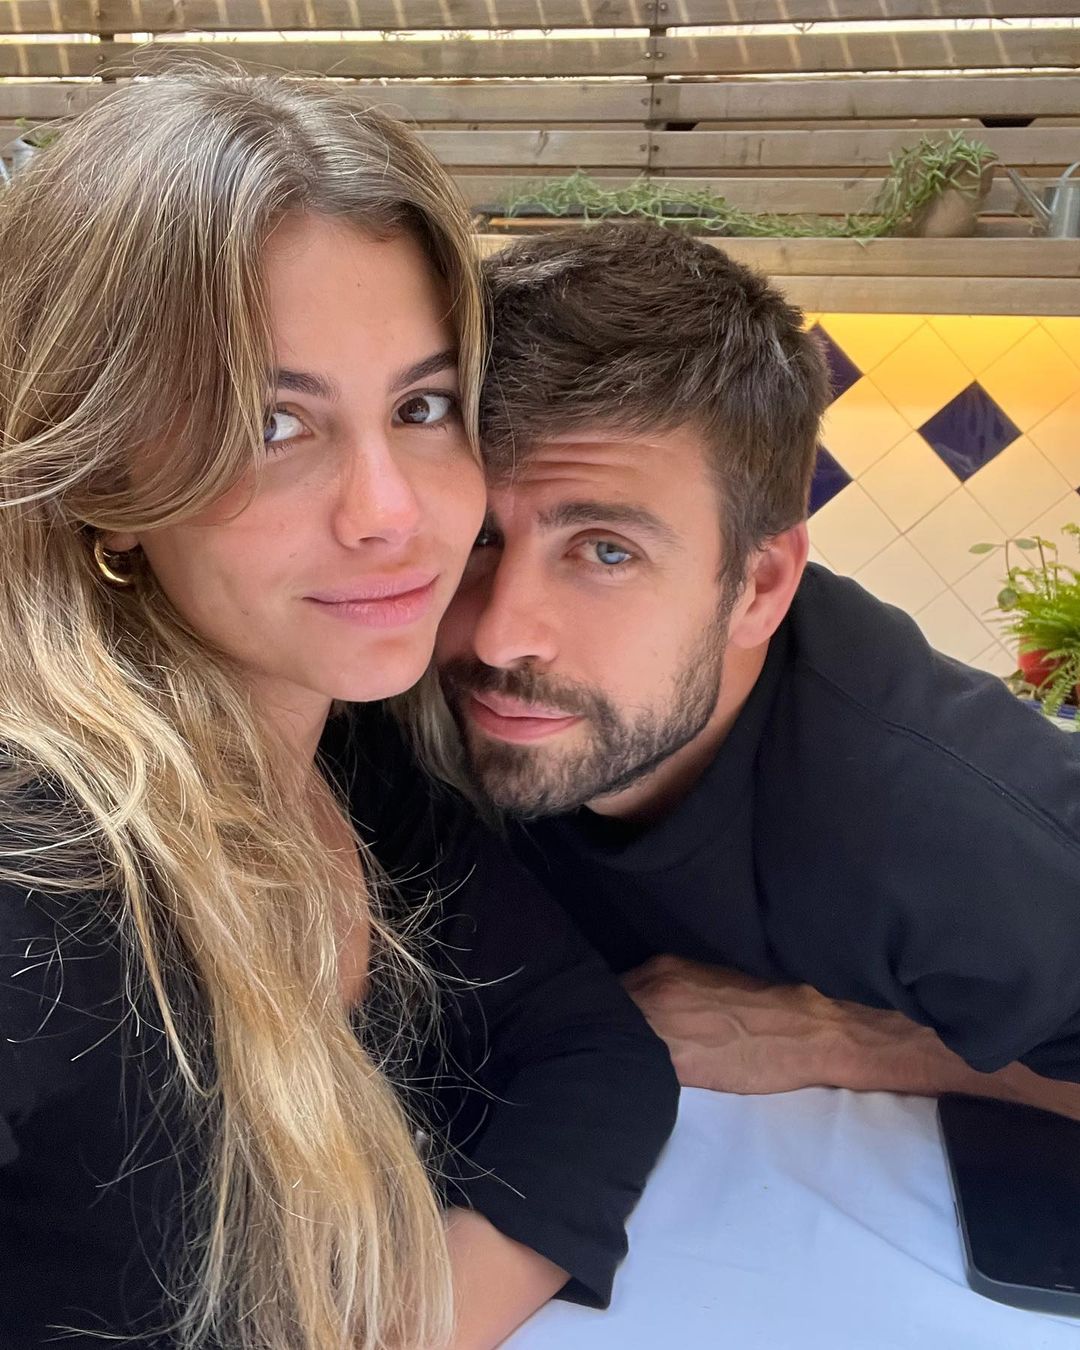 Gerard Pique and Clara Chia Marti make relationship insta-official (Image: Gerard Pique Instagram)